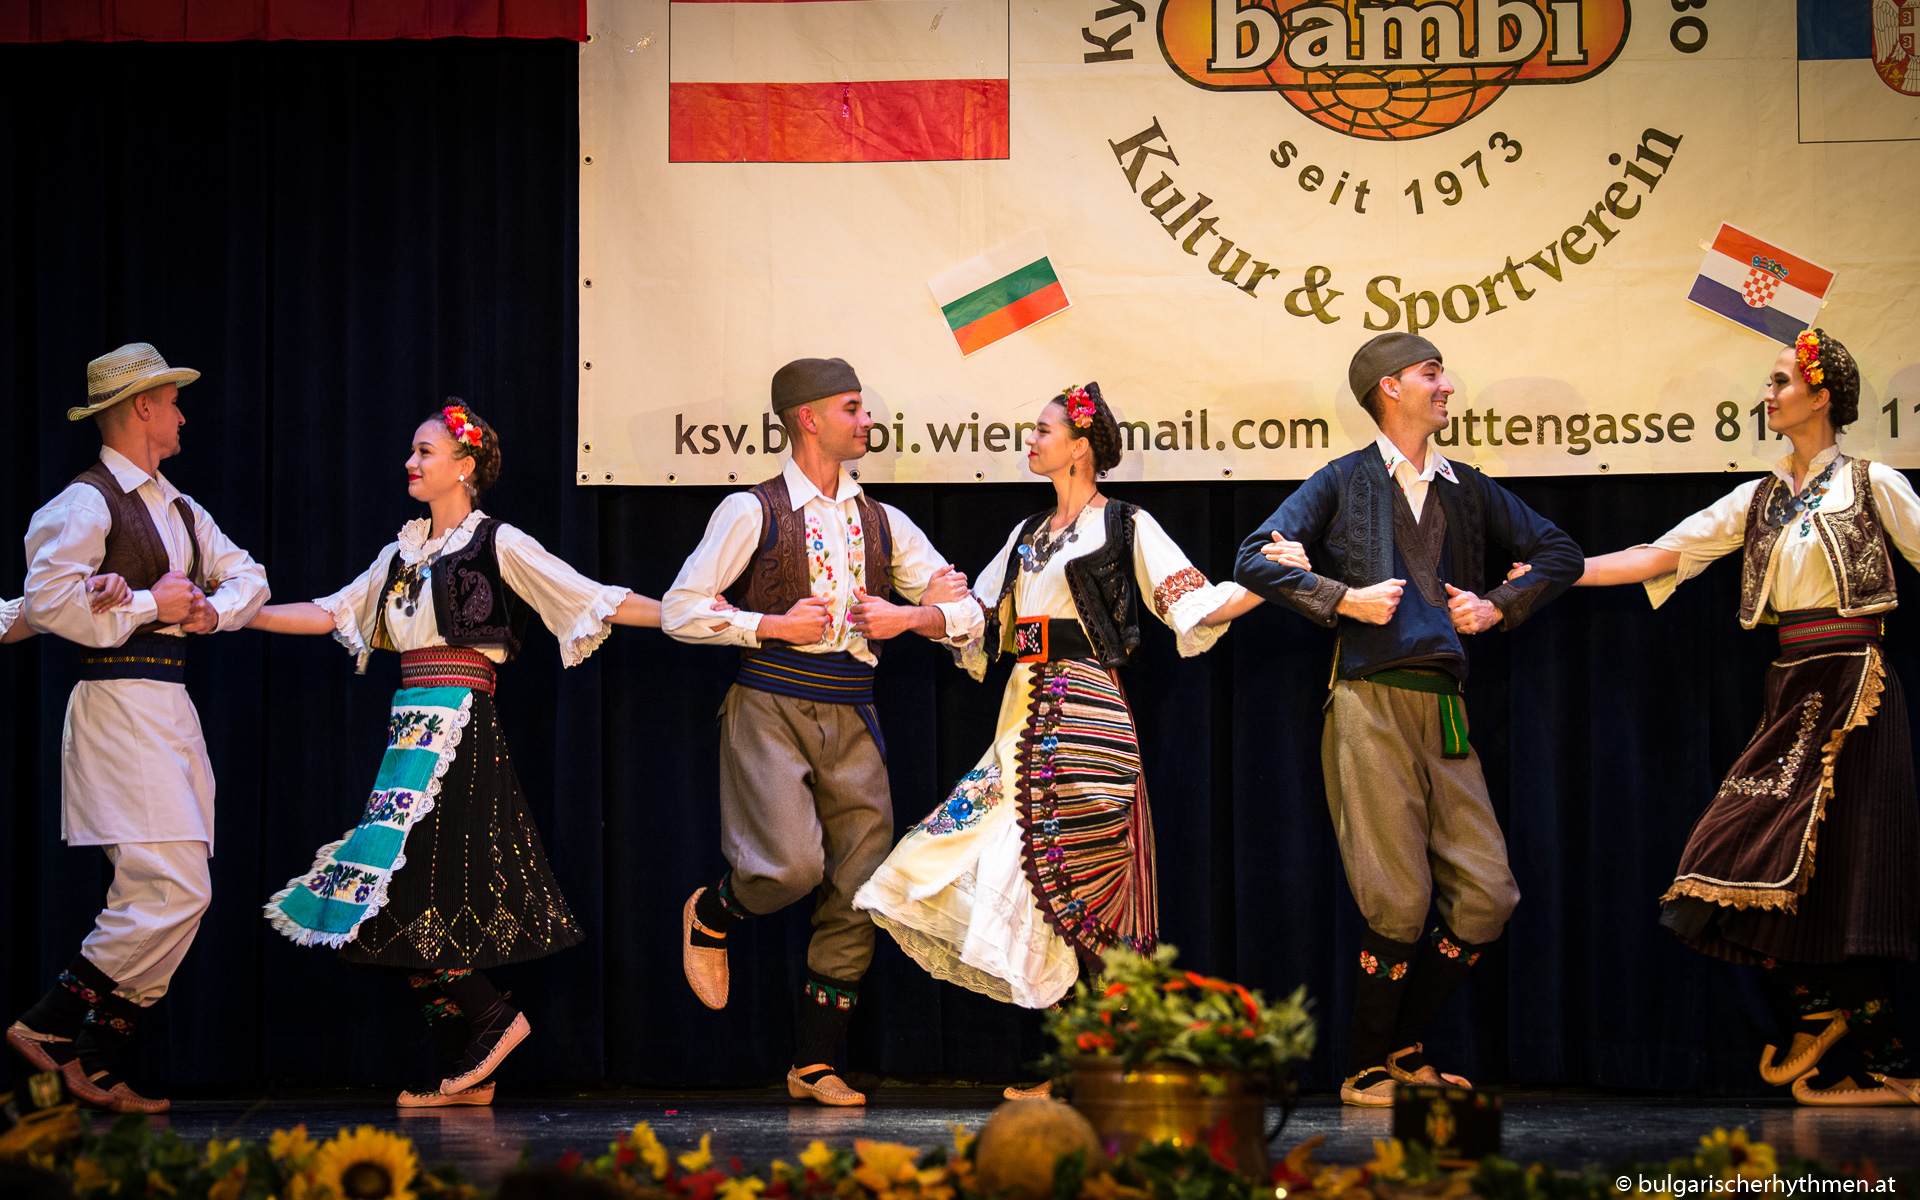 New Business: Plešemo folklor i komuniciramo za Austrijski savez srpskog folklora i kulturno - sportsko društvo Bambi iz Beča u Austriji i Srbiji